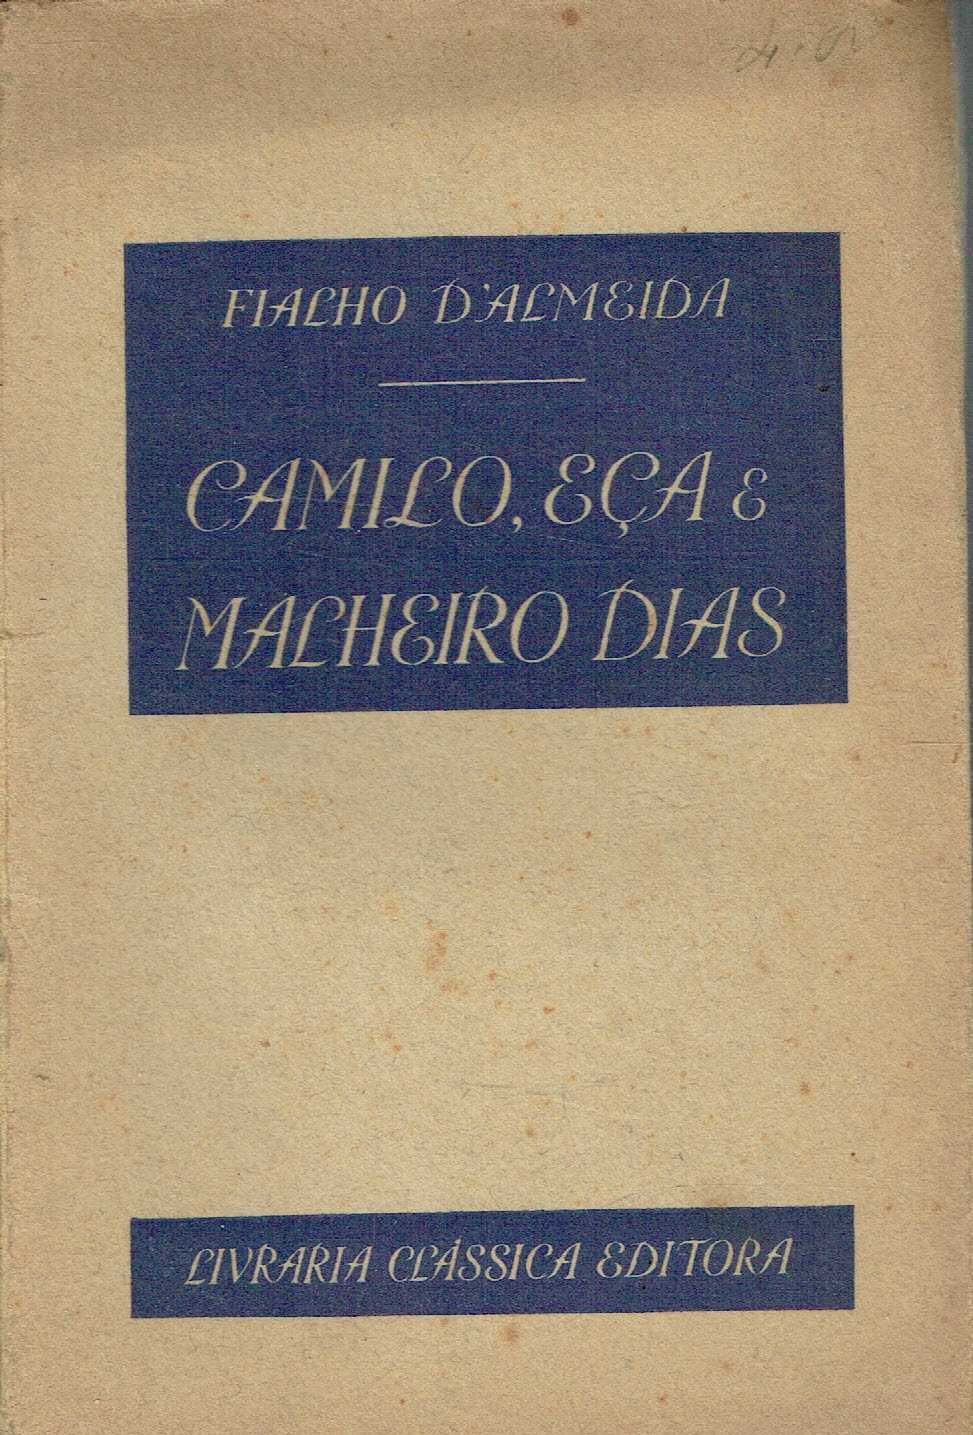 0336

Camilo, Eça e Malheiro Dias  
de Fialho d'Almeida